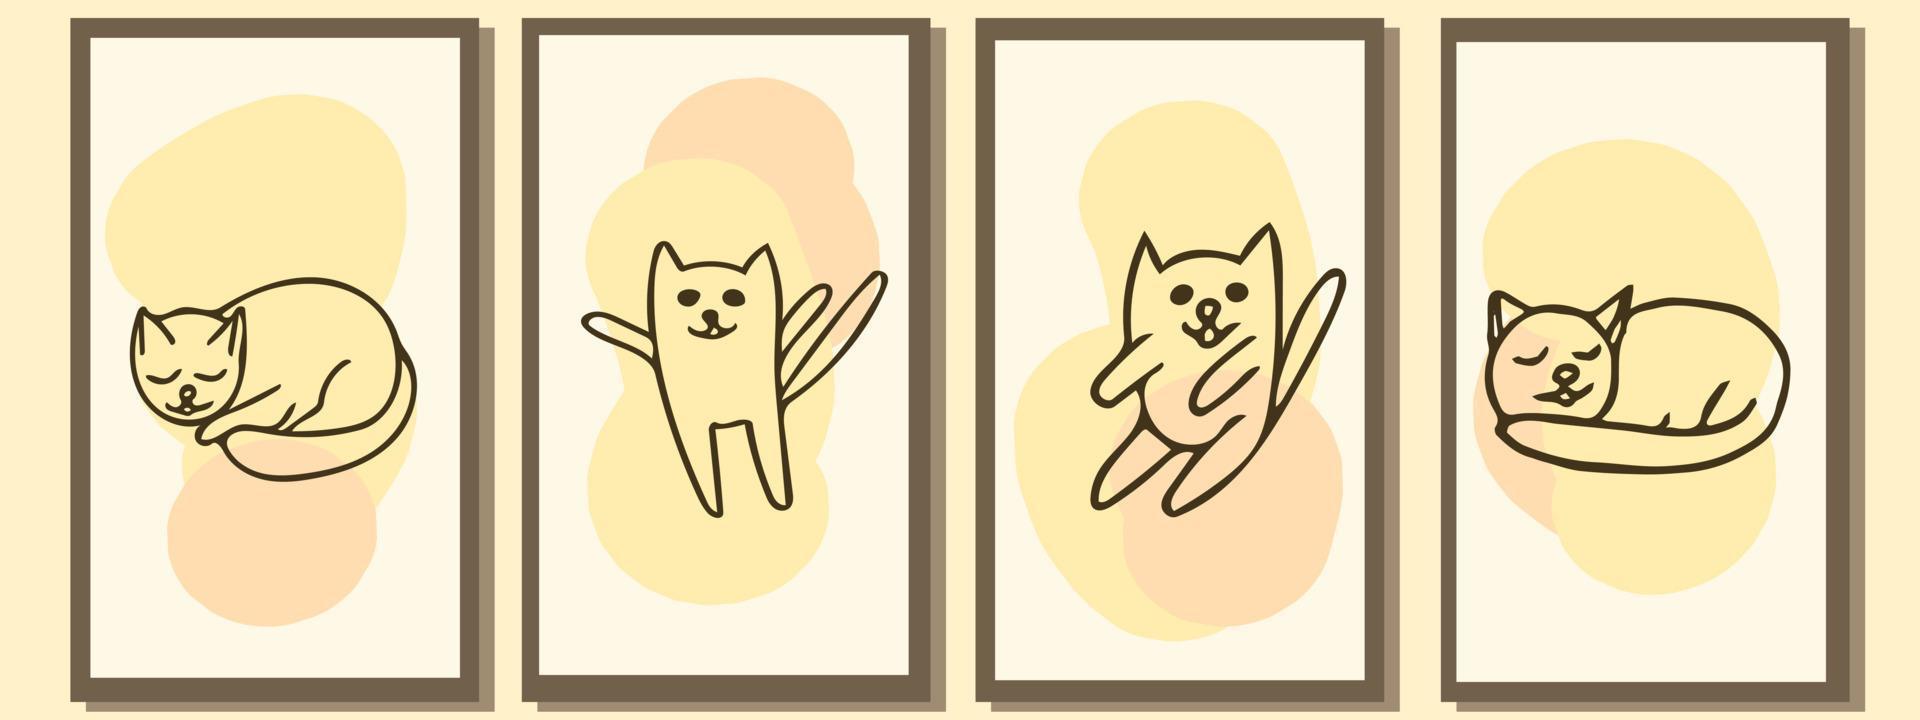 retratos de arte lineal del minimalismo de los gatos. conjunto de plantillas para carteles, tarjetas, decoración de interiores. boceto estilo garabato dibujado a mano. lindos gatitos vector